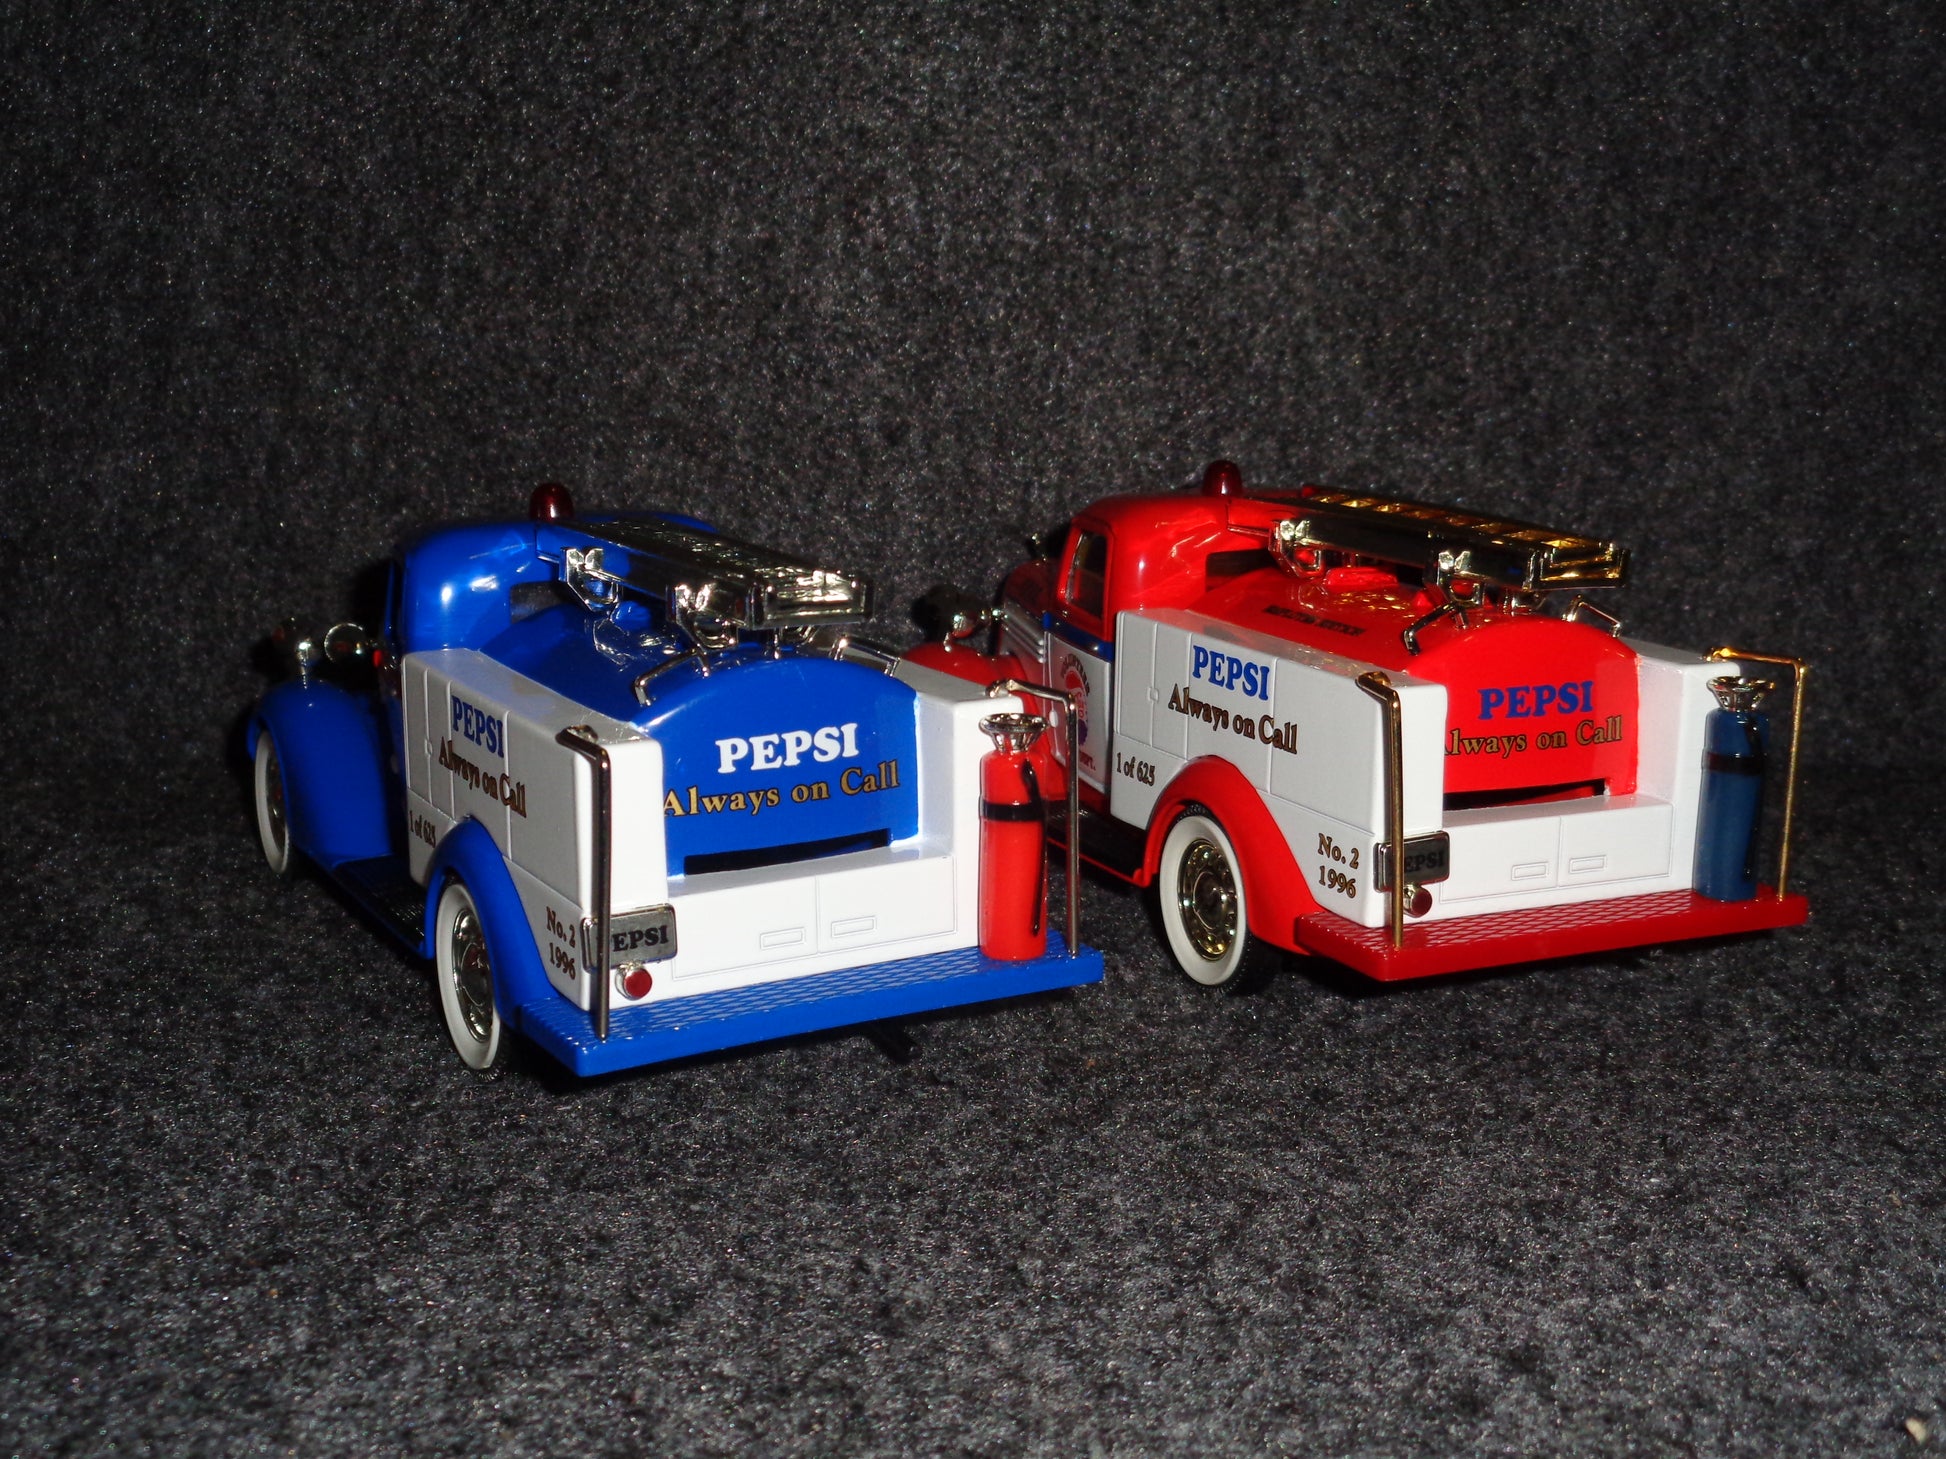 Pepsi-Cola 1936 Dodge Pumper Fire Truck Set